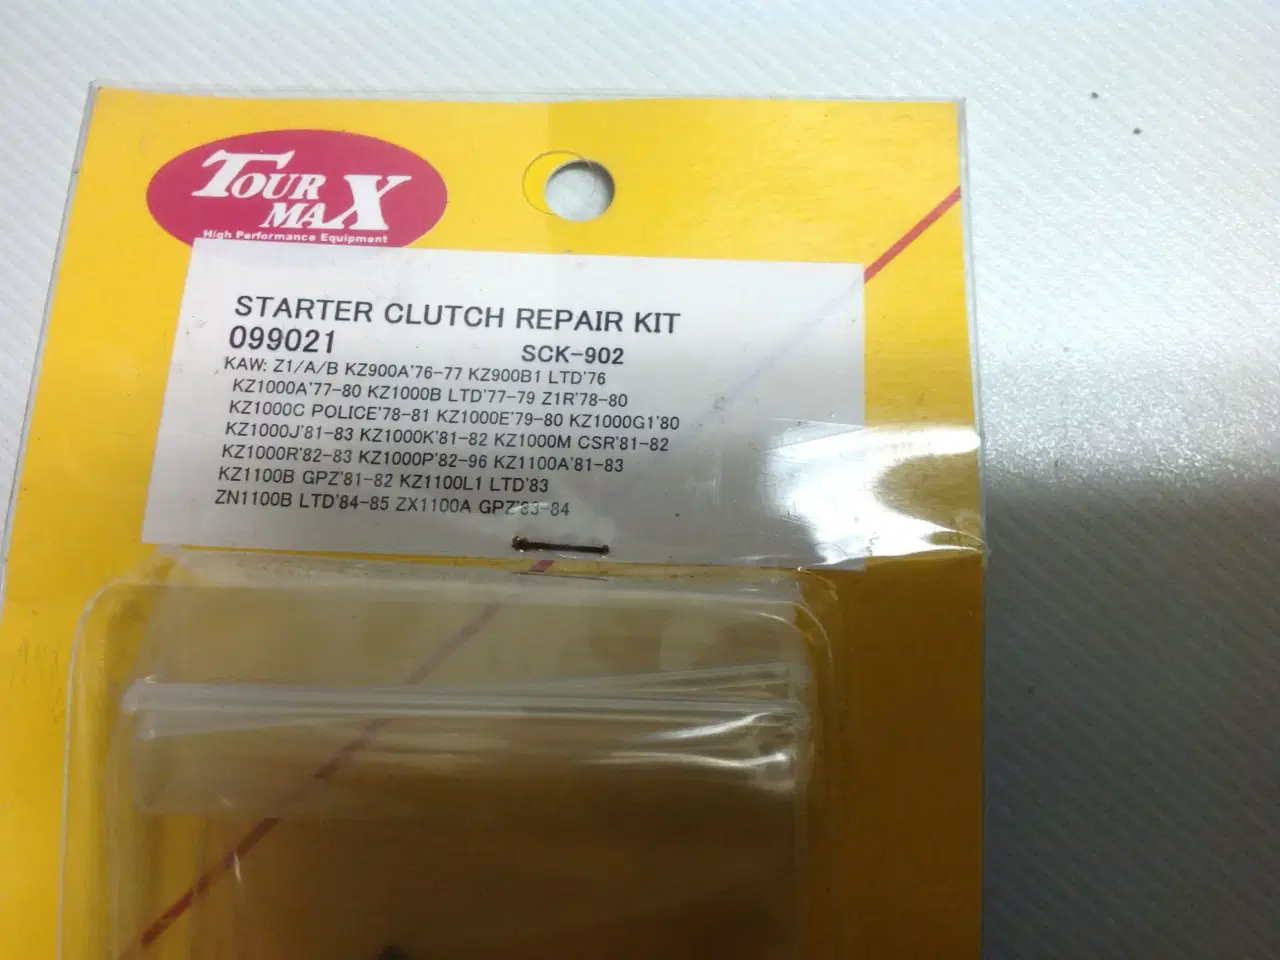 Billede 3 - Tour Max starter cluotch repair kit 0990